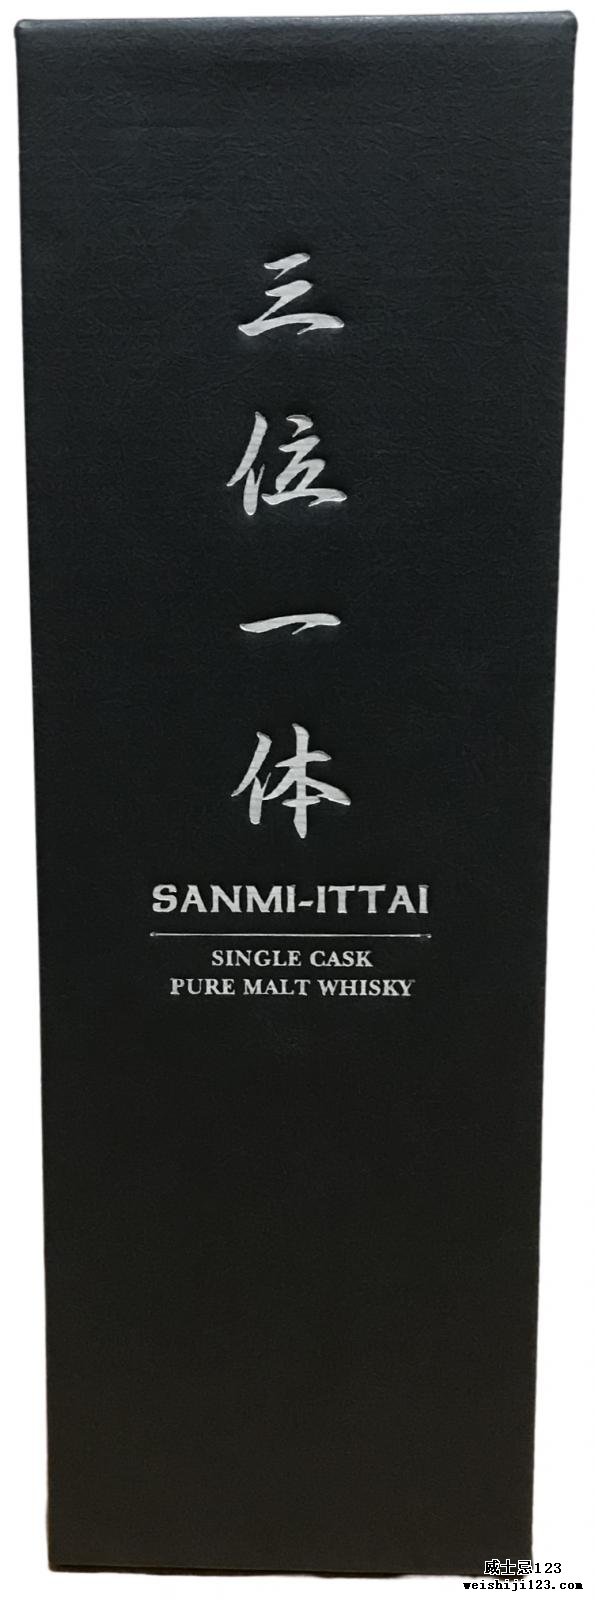 Hanyu Sanmi-Ittai Trinitas No. 2 – The Legendary Warrior